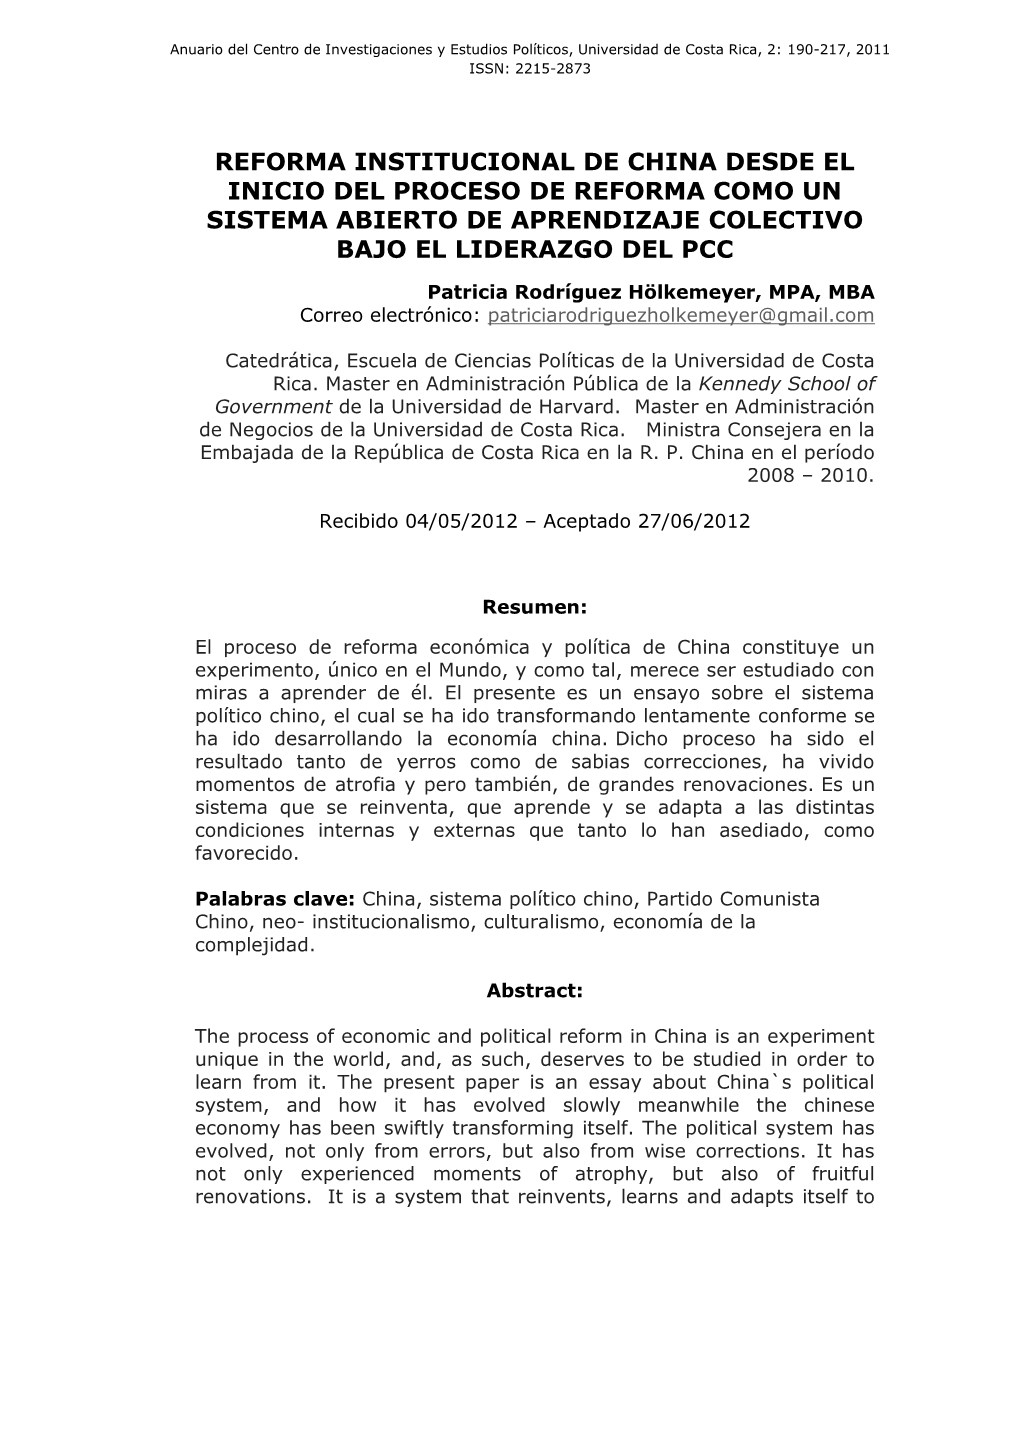 Anuario Del Centro De Investigaciones Y Estudios Políticos, Universidad De Costa Rica, 2: 190-217, 2011 ISSN: 2215-2873